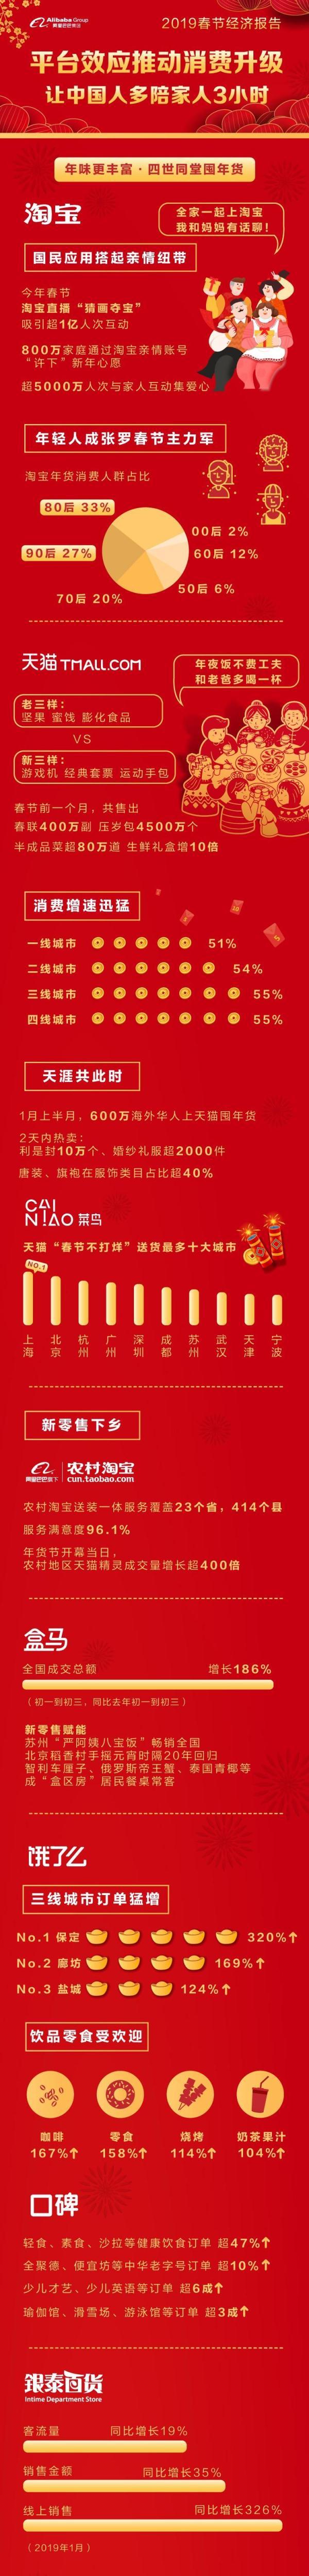 春节经济报告凸显阿里平台效应 数字化让中国人多陪家人三小时